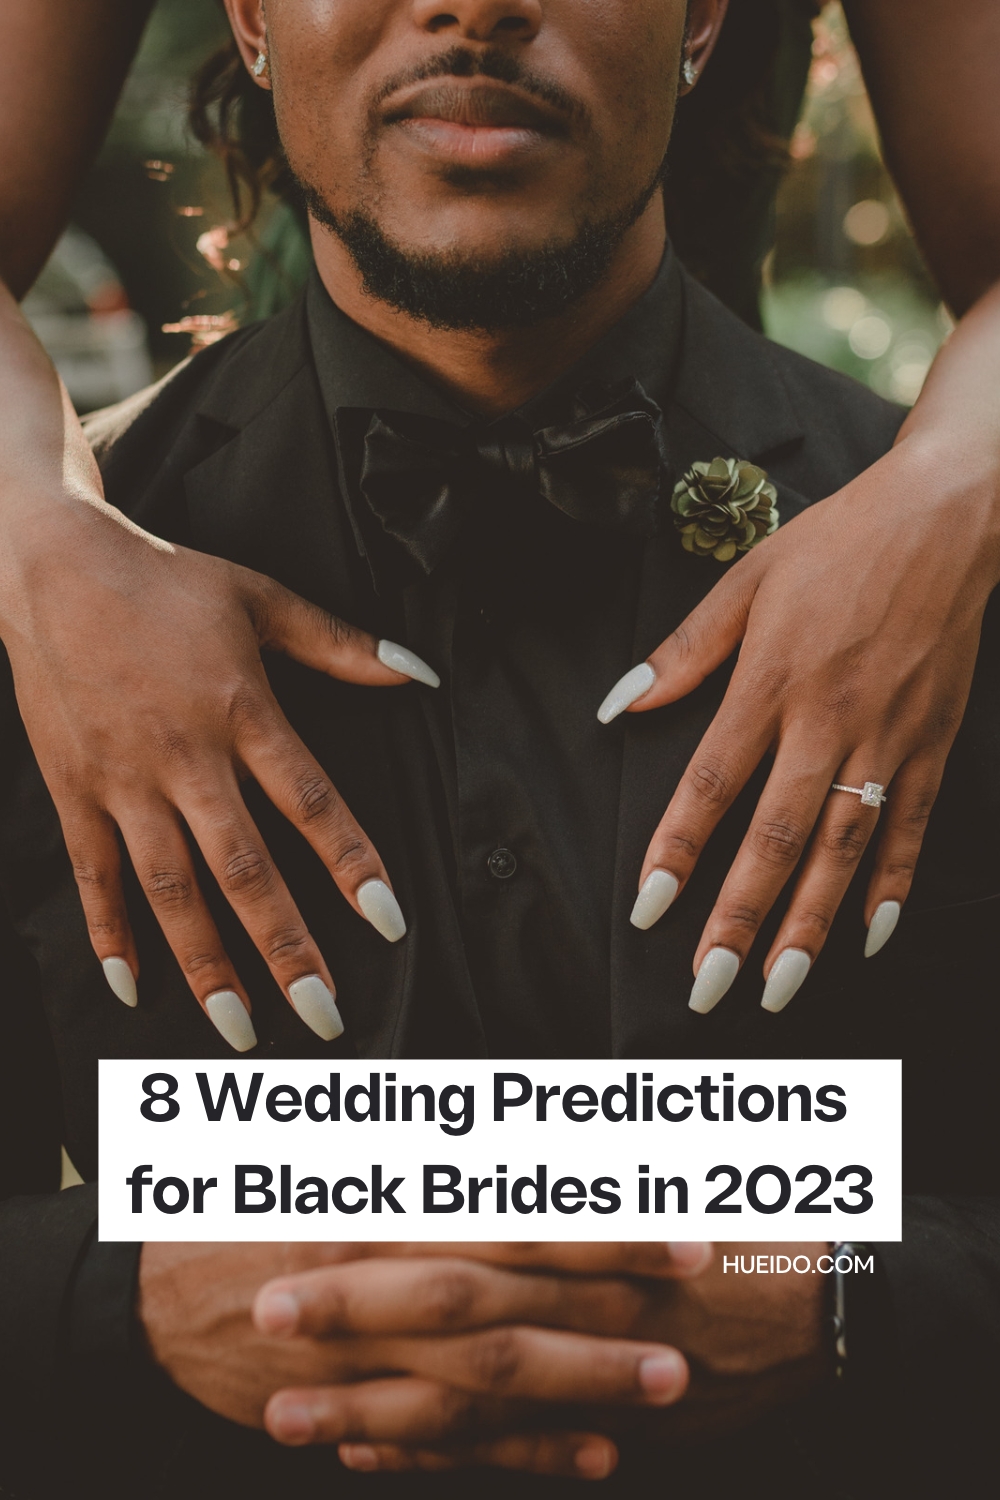 8 Wedding Predictions for Black Brides in 2023